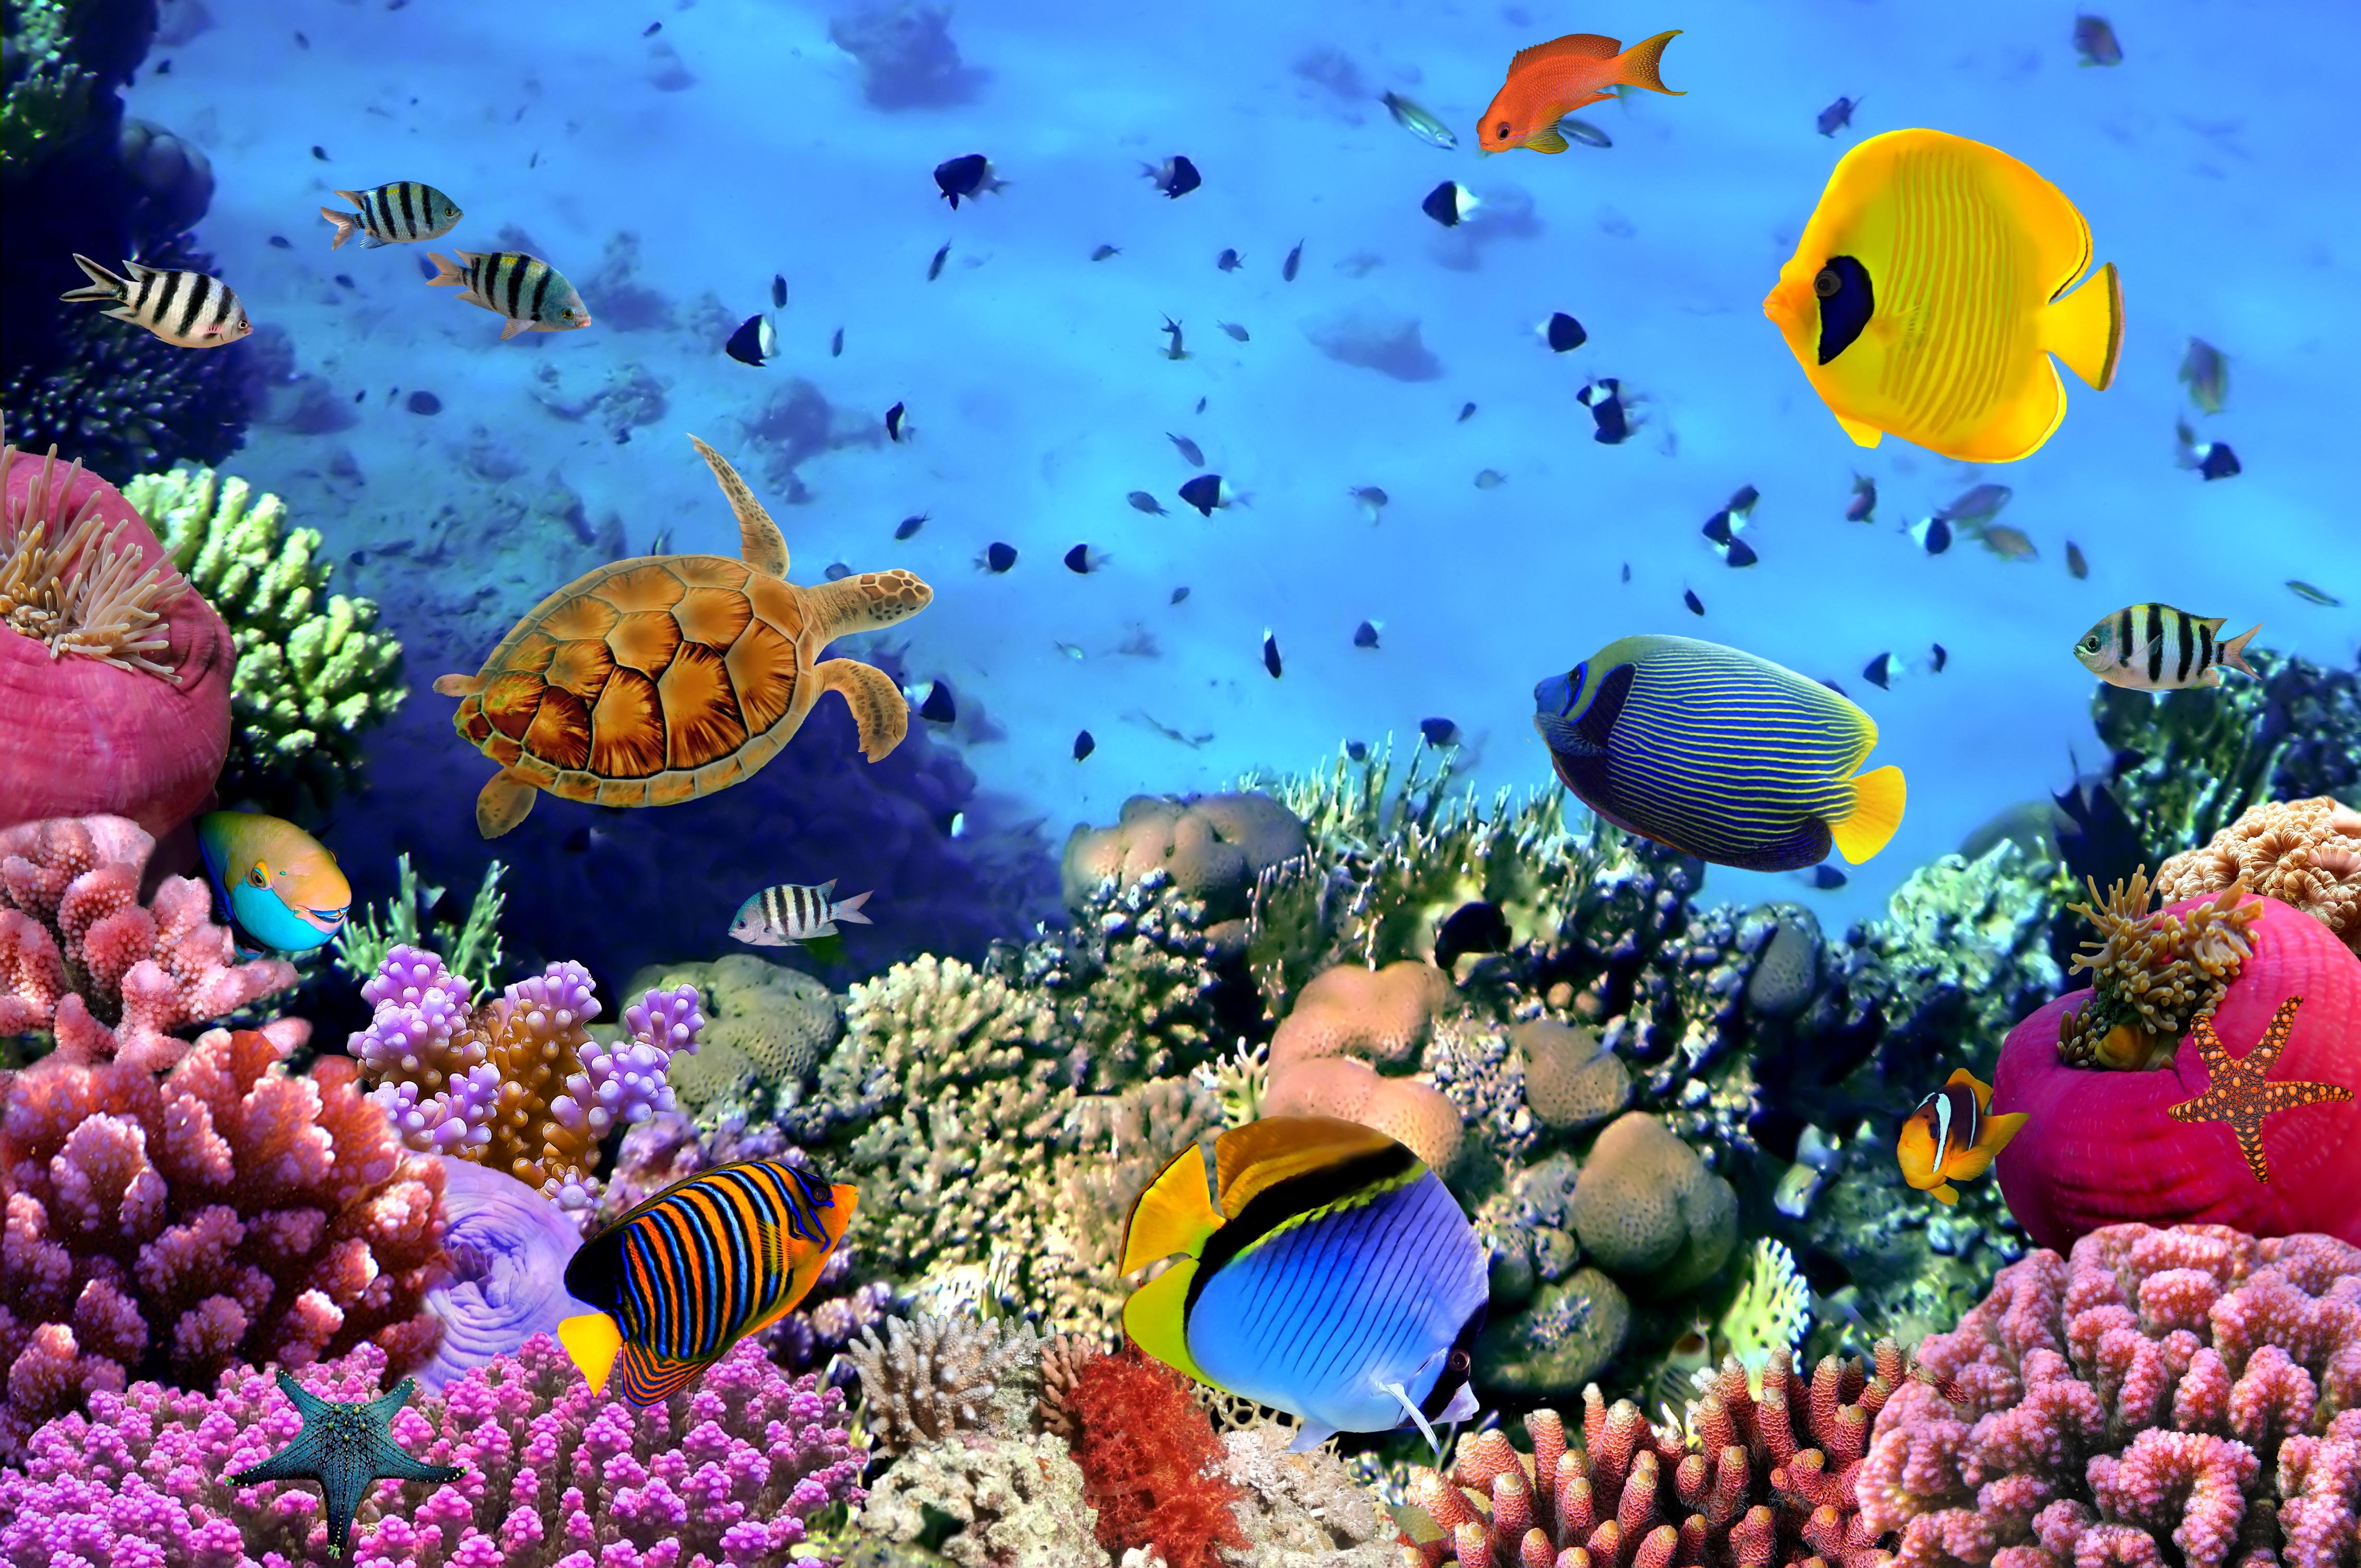 Hình nền đại dương - Bạn yêu thích thiên nhiên và muốn mang một chút không gian đại dương vào trong máy tính của mình? Hình nền đại dương sẽ làm bạn say đắm với khung cảnh tuyệt đẹp của đại dương với những màu sắc rực rỡ và thú vị. Hãy cùng chiêm ngưỡng những hình ảnh tuyệt đẹp của hình nền đại dương!